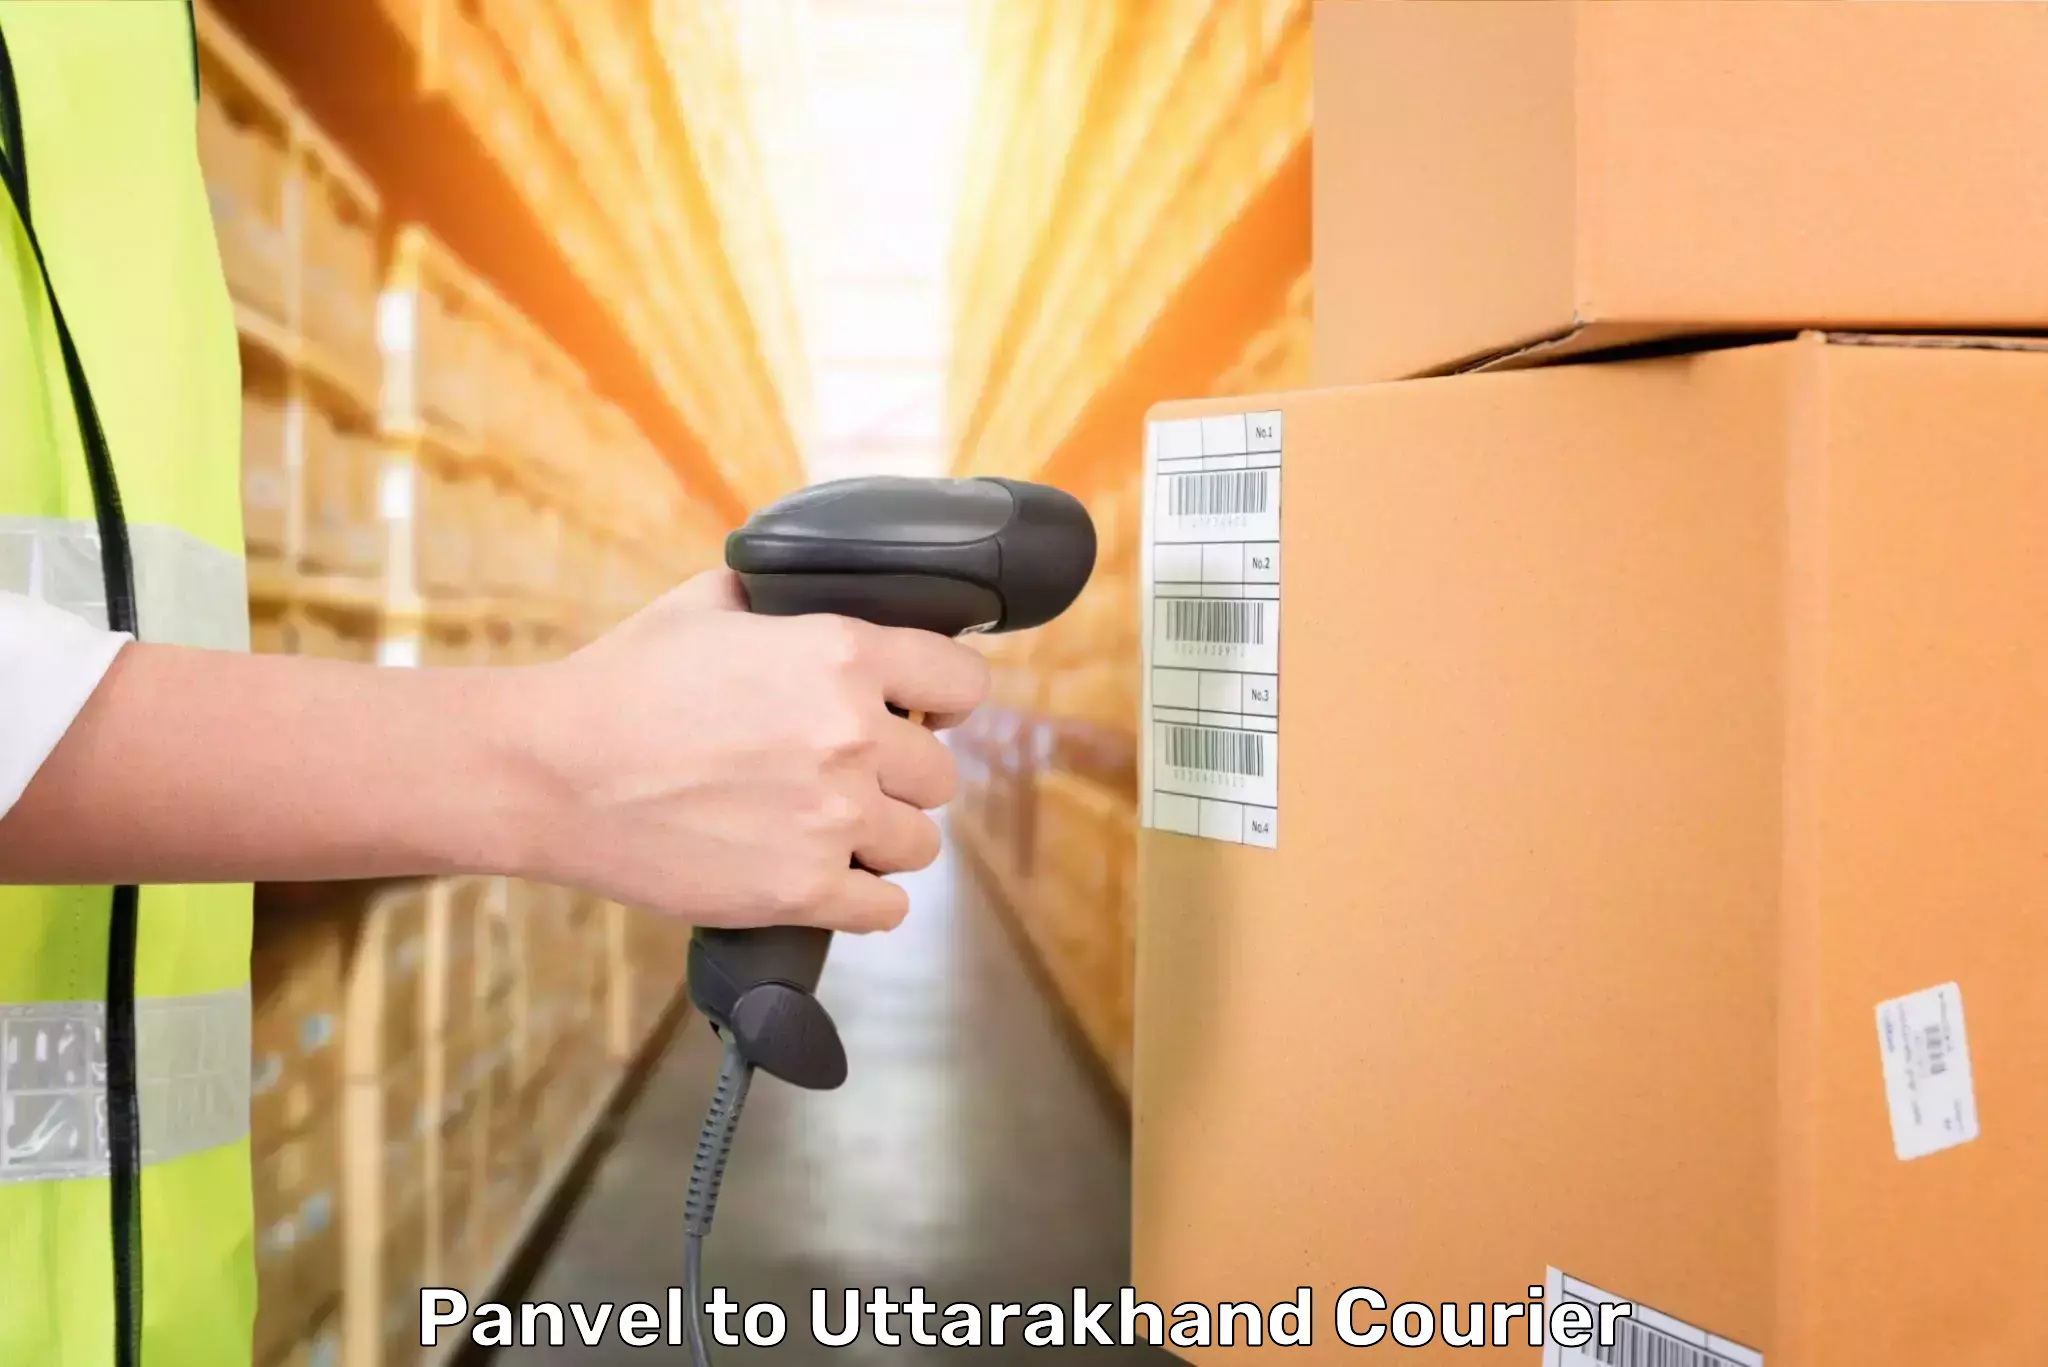 Luggage transport company Panvel to Uttarakhand